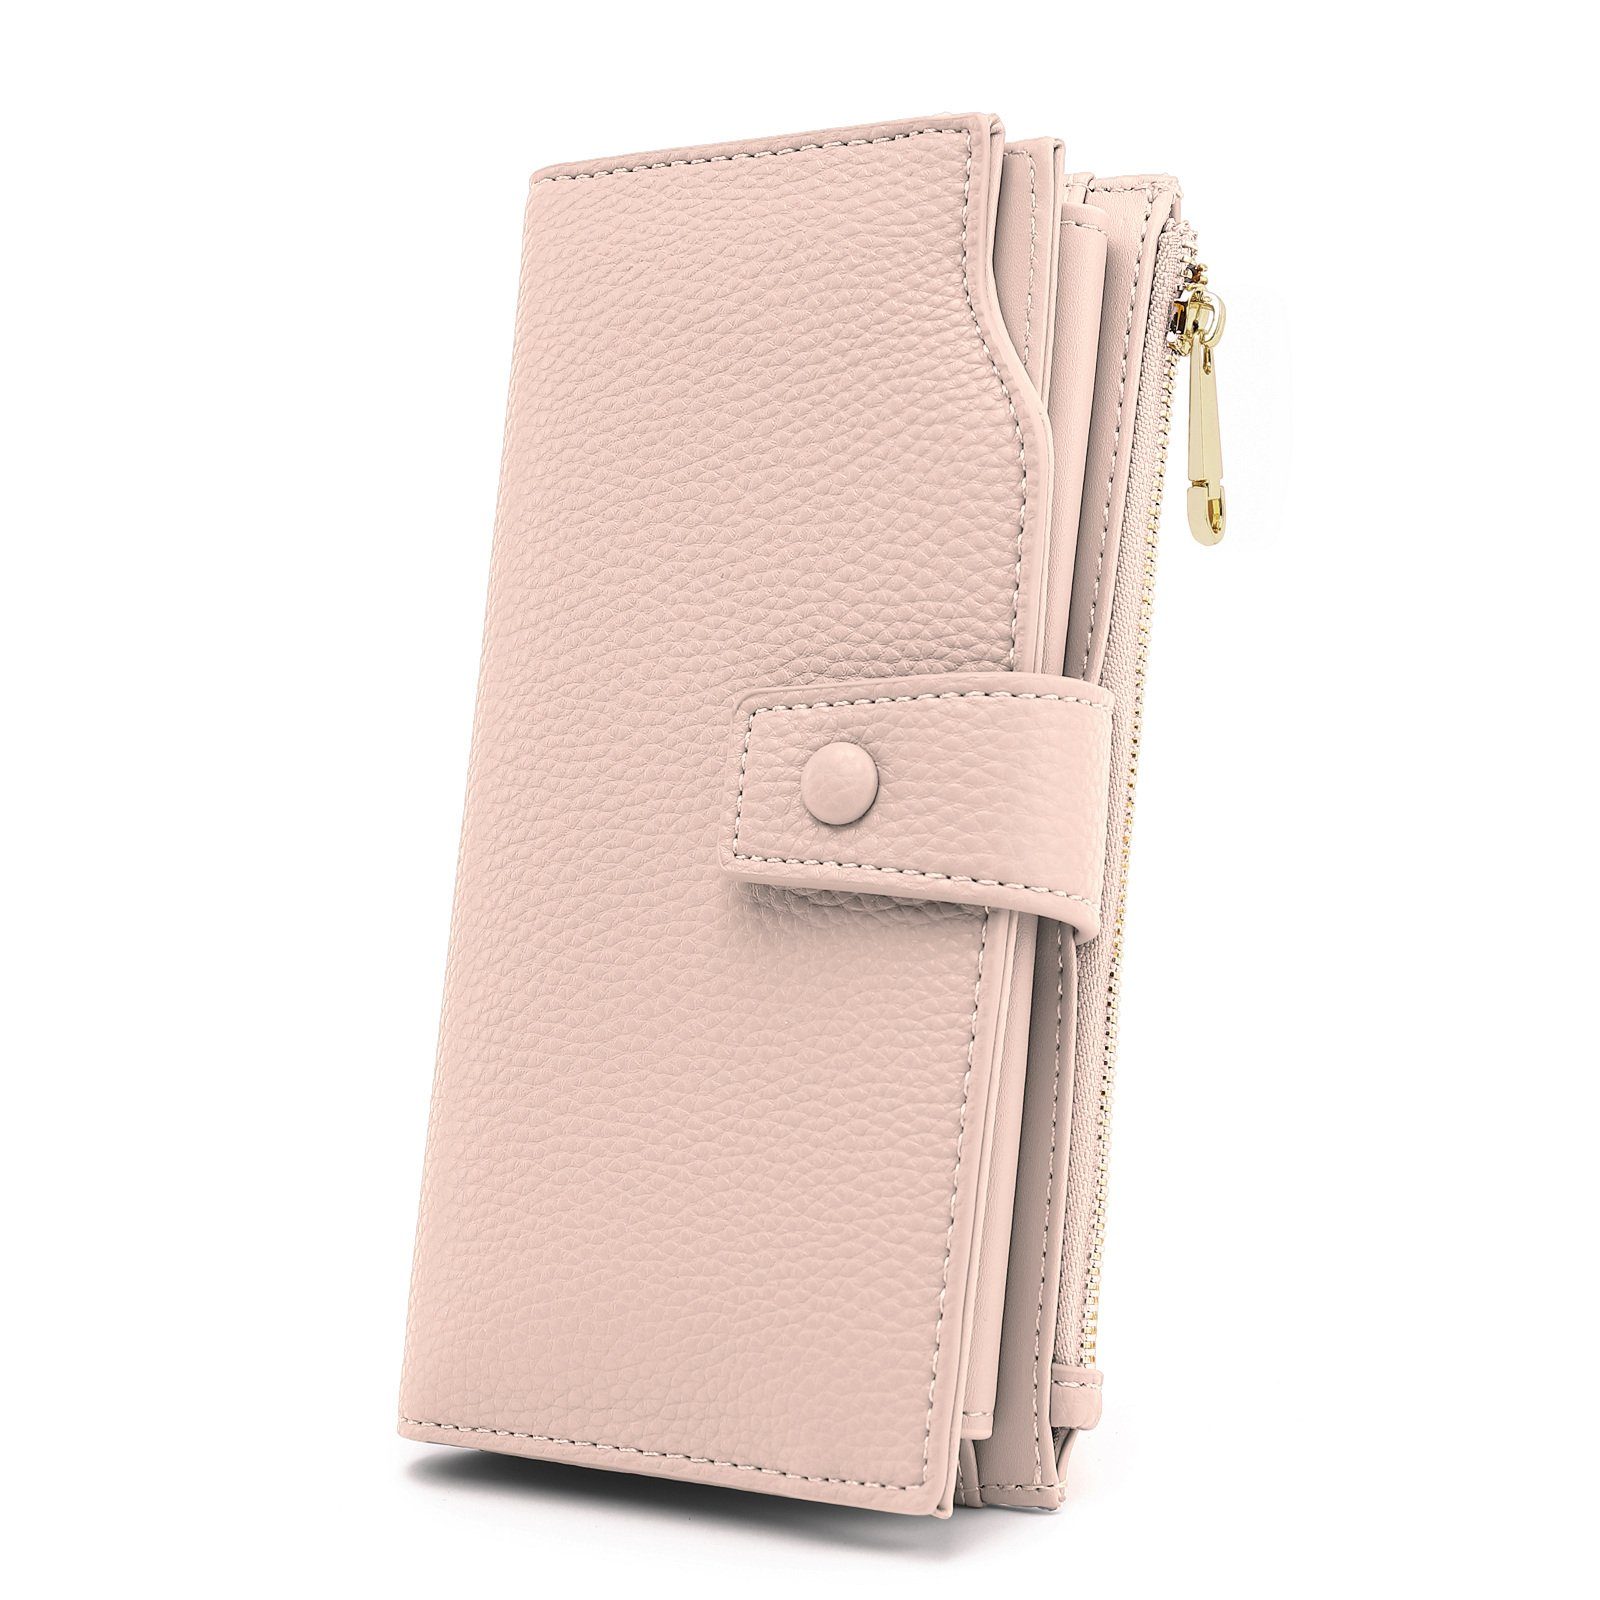 TAN.TOMI Brieftasche Portemonnaie Damen, Geldbörse für Frauen mit Lanyard (Brieftasche), Geldbörse aus hochwertigem Kunstleder Hellrosa